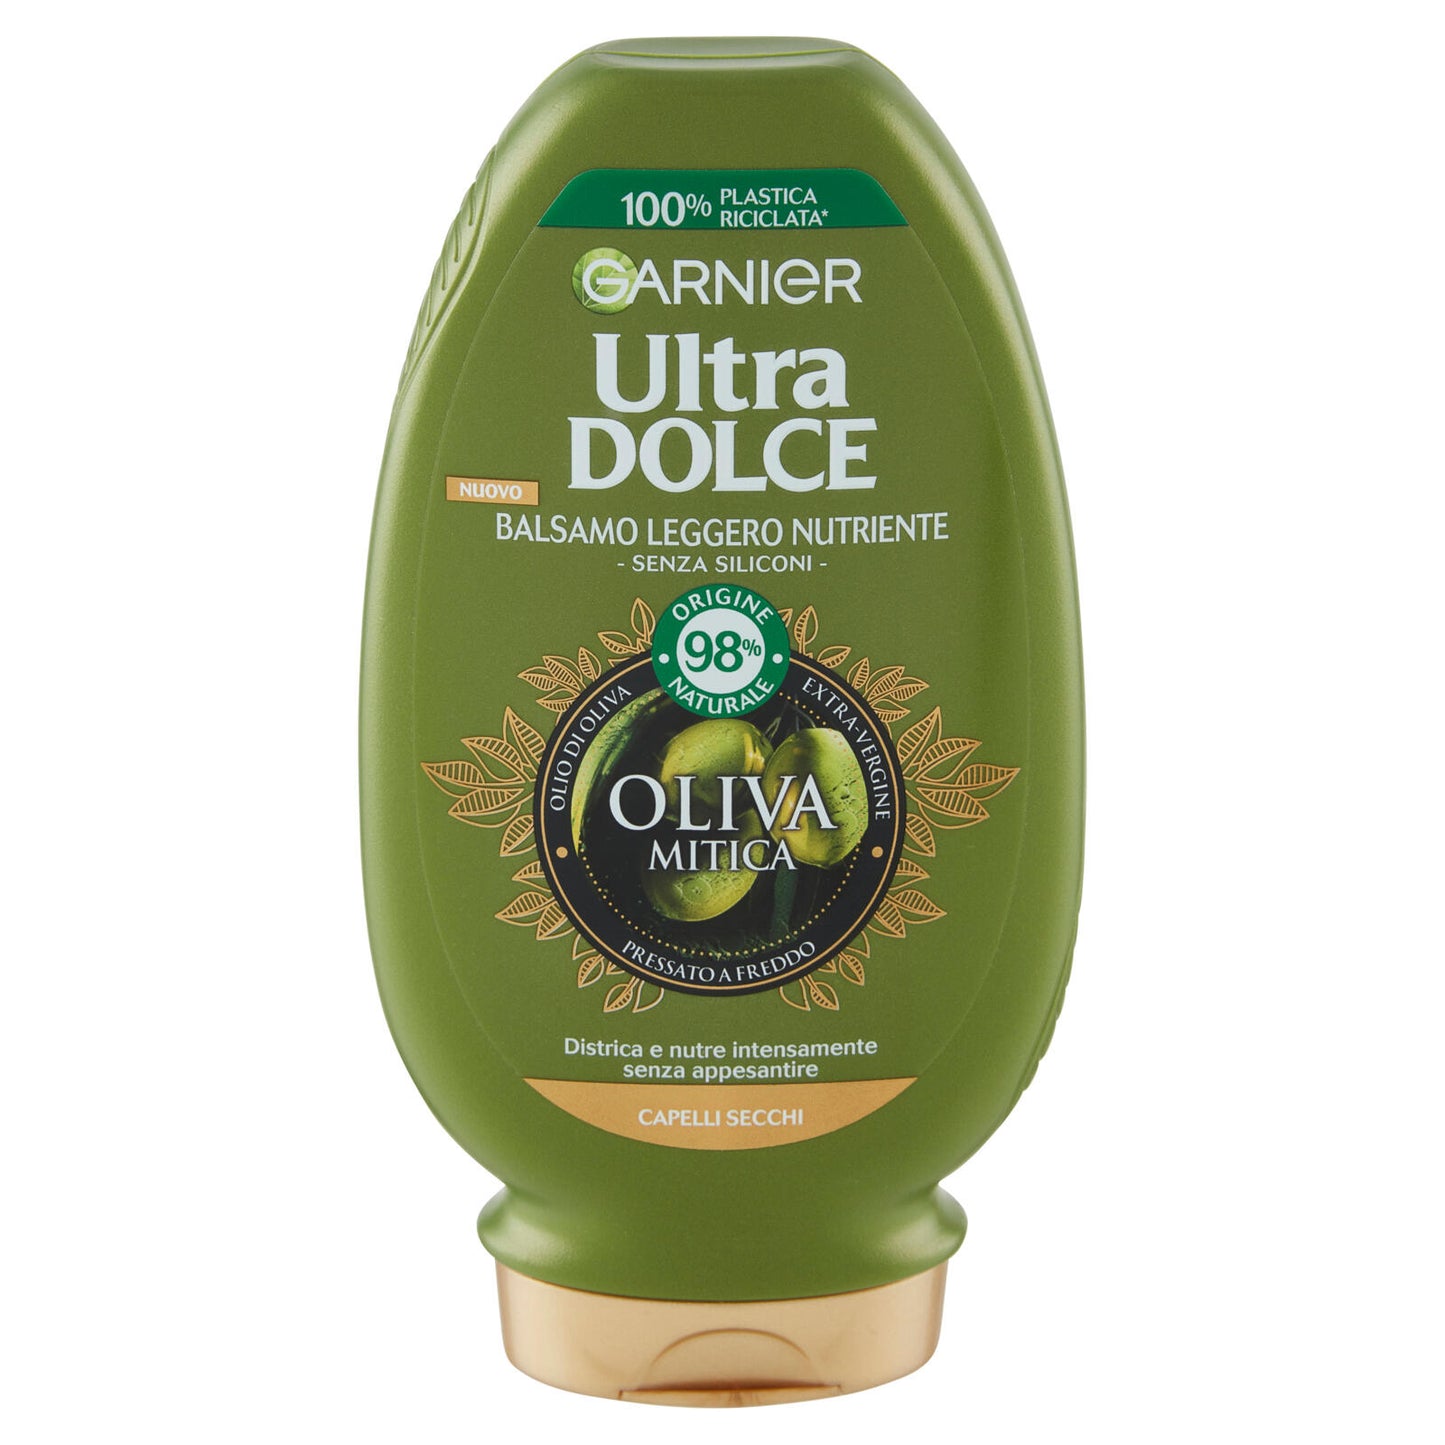 Garnier Ultra Dolce Balsamo nutriente Oliva Mitica all'olio di oliva vergine 200 ml